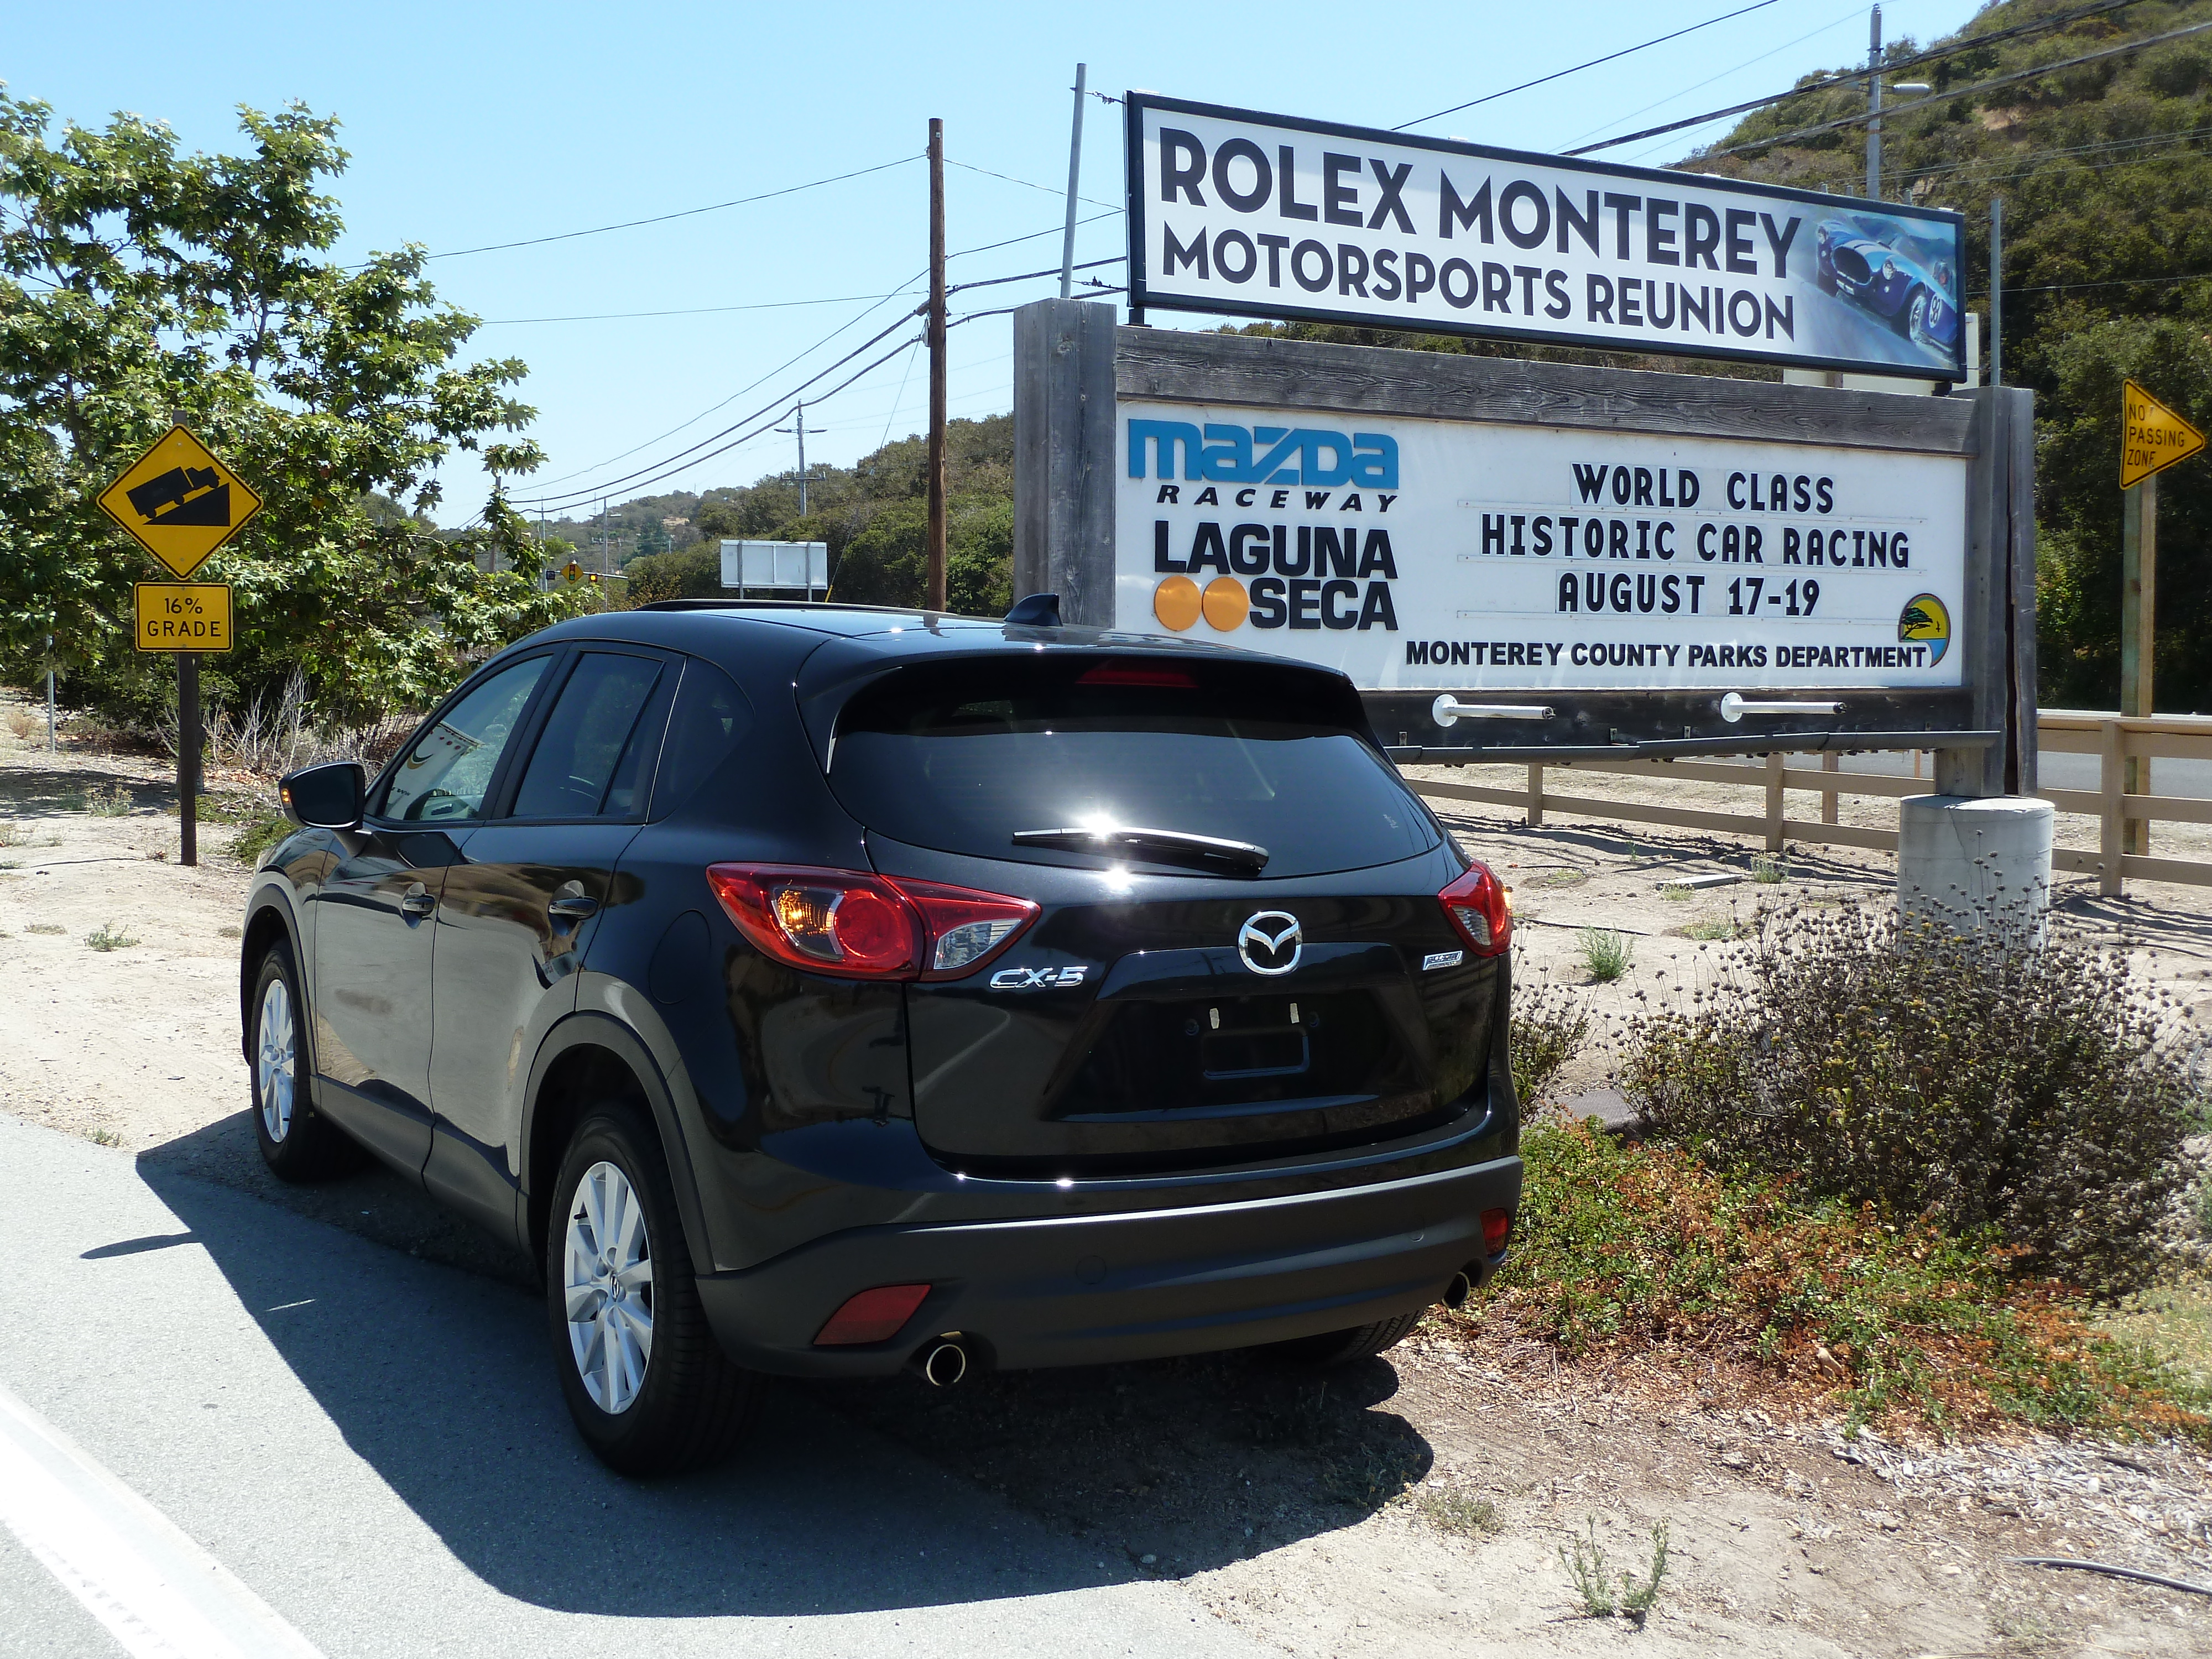 Monterey, Pebble Beach, Concorso Italiano, and Mazda Raceway Laguna Seca via CX-5